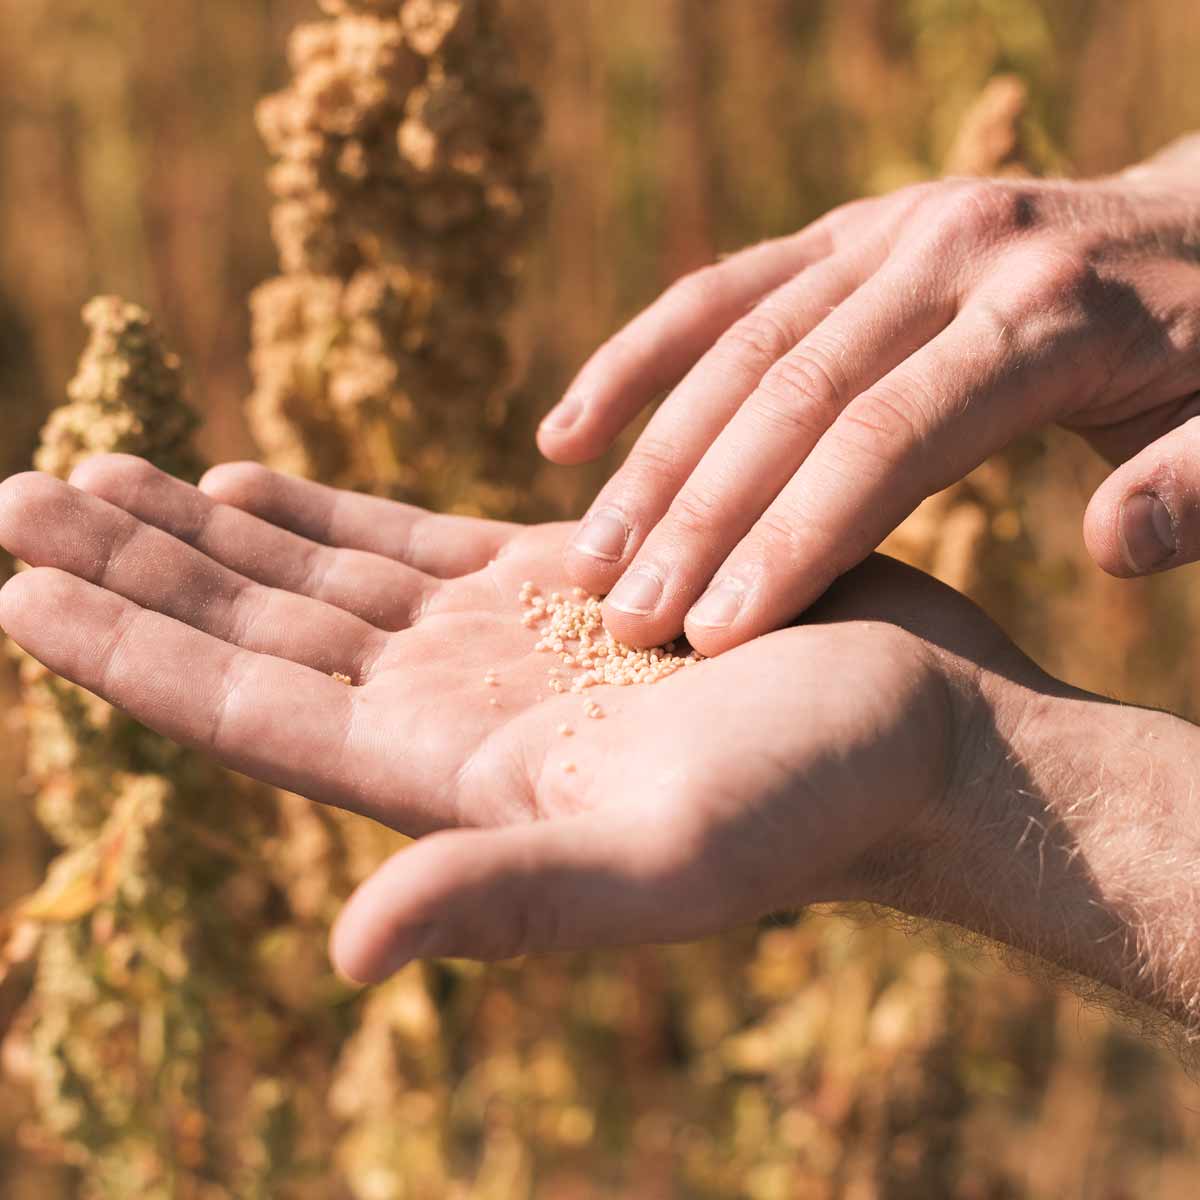 Landmand med quinoa i hænderne